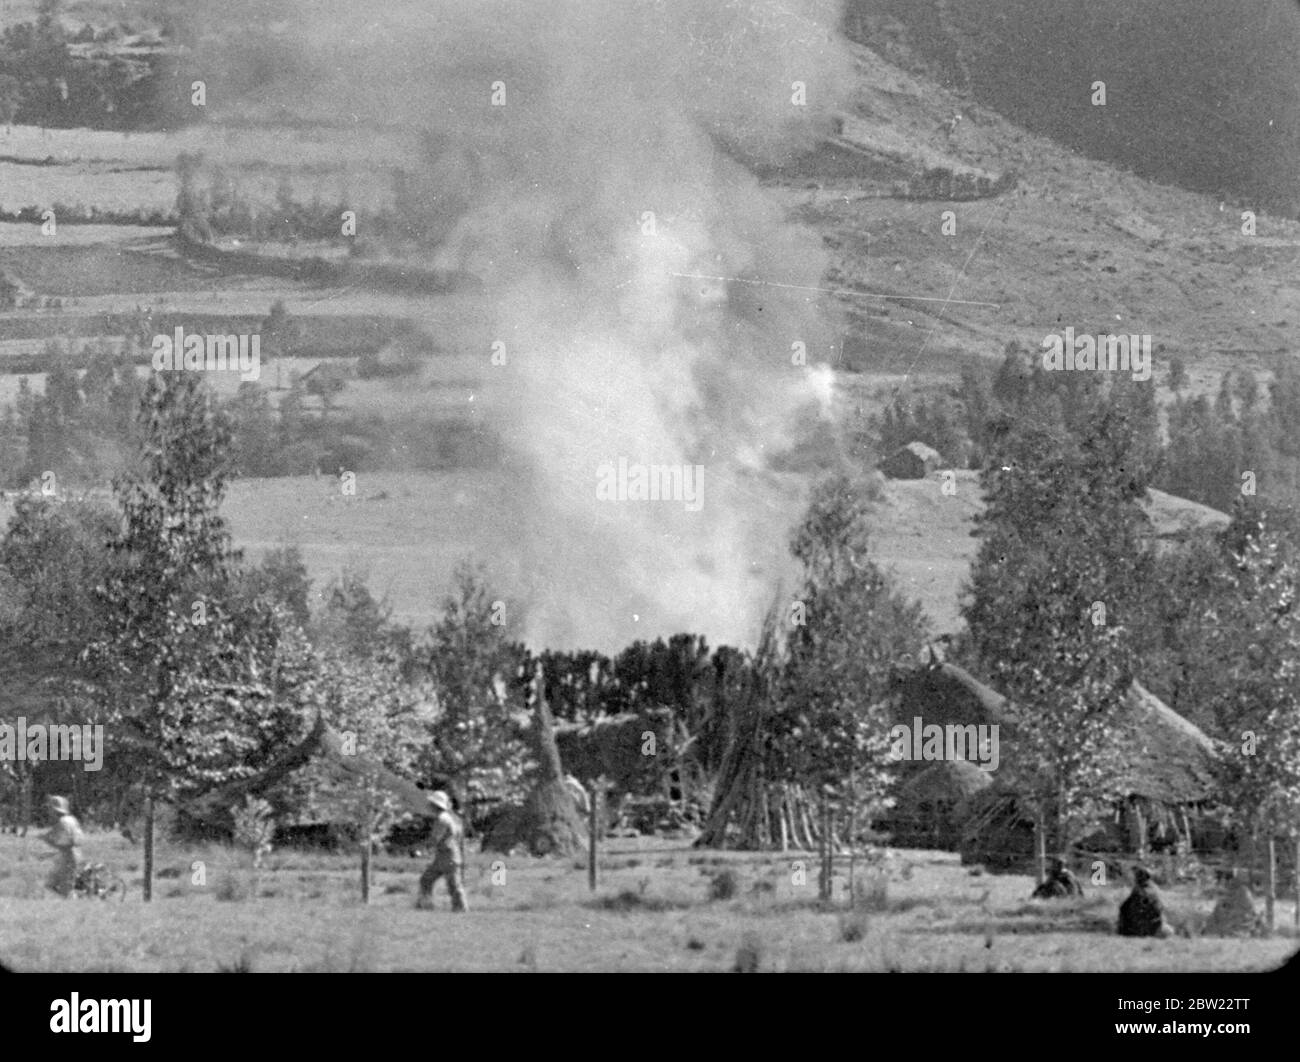 Italienischer Äthiopienkrieg, 1935 -1936 die Bombardierung des äthiopischen Dorfes Dessye durch italienische Flugzeuge. Dorfgebäude in Brand. Dezember 1935 Stockfoto